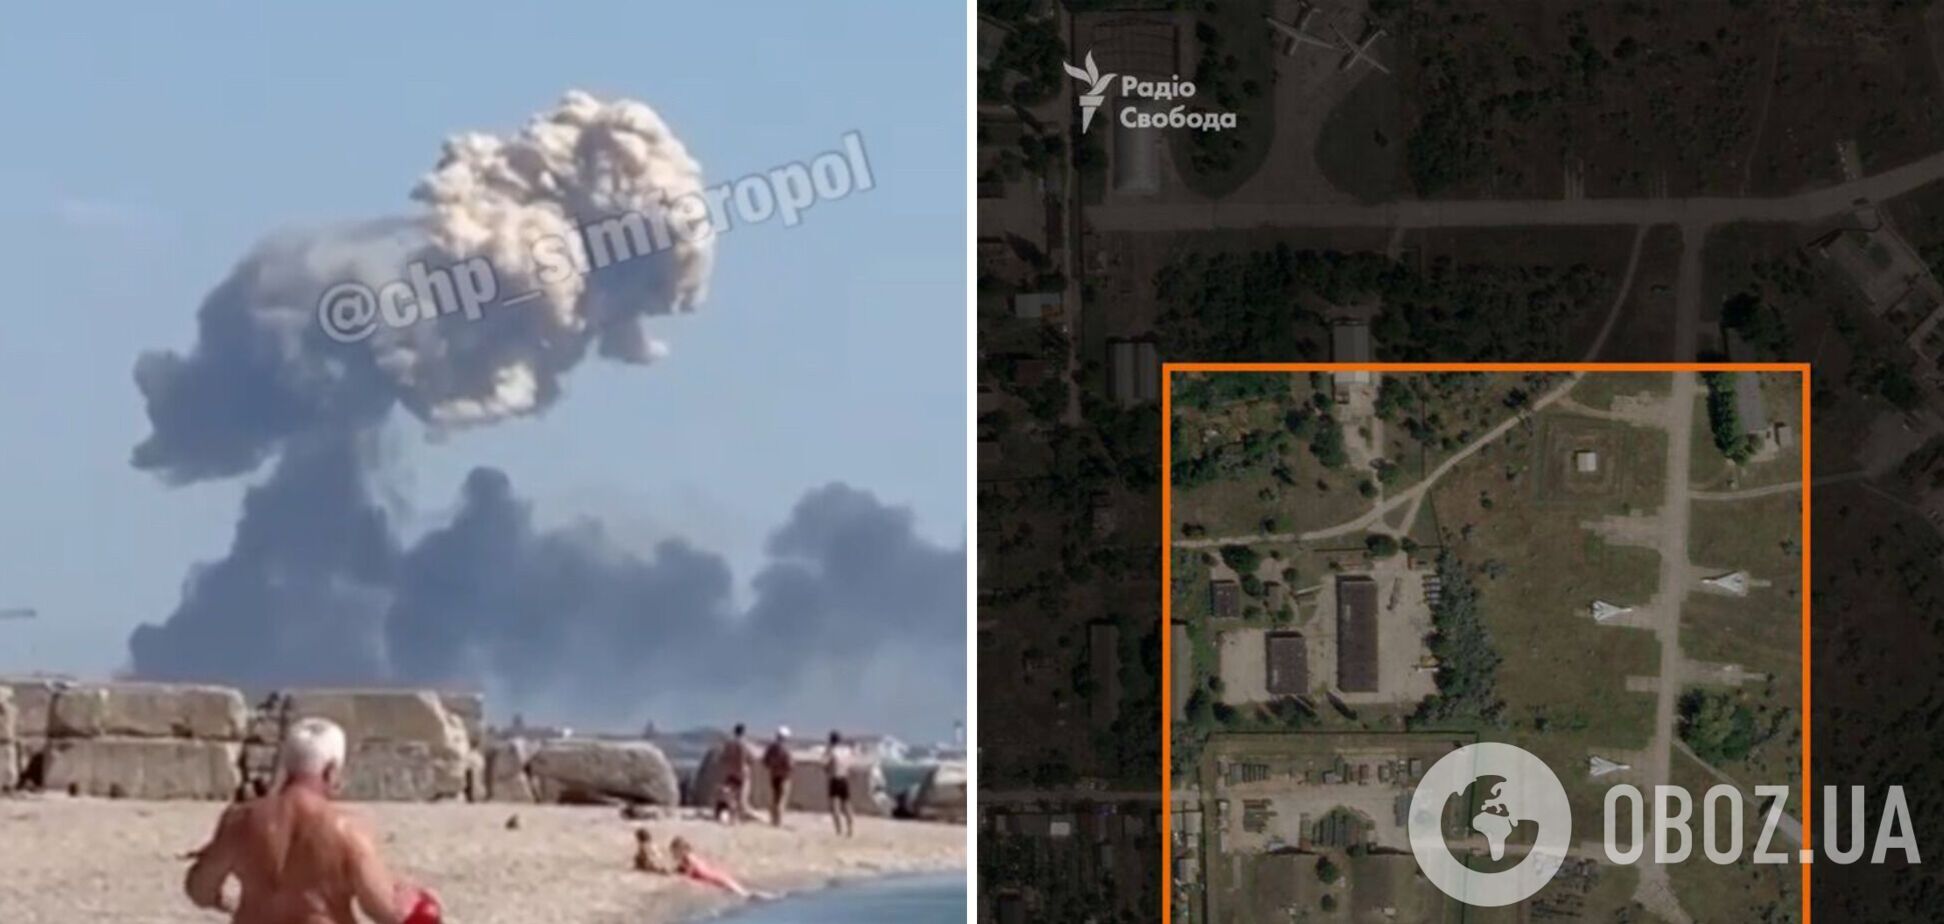 Ключевая база авиации РФ: что известно об крымском аэродроме 'Саки', где произошла серия взрывов